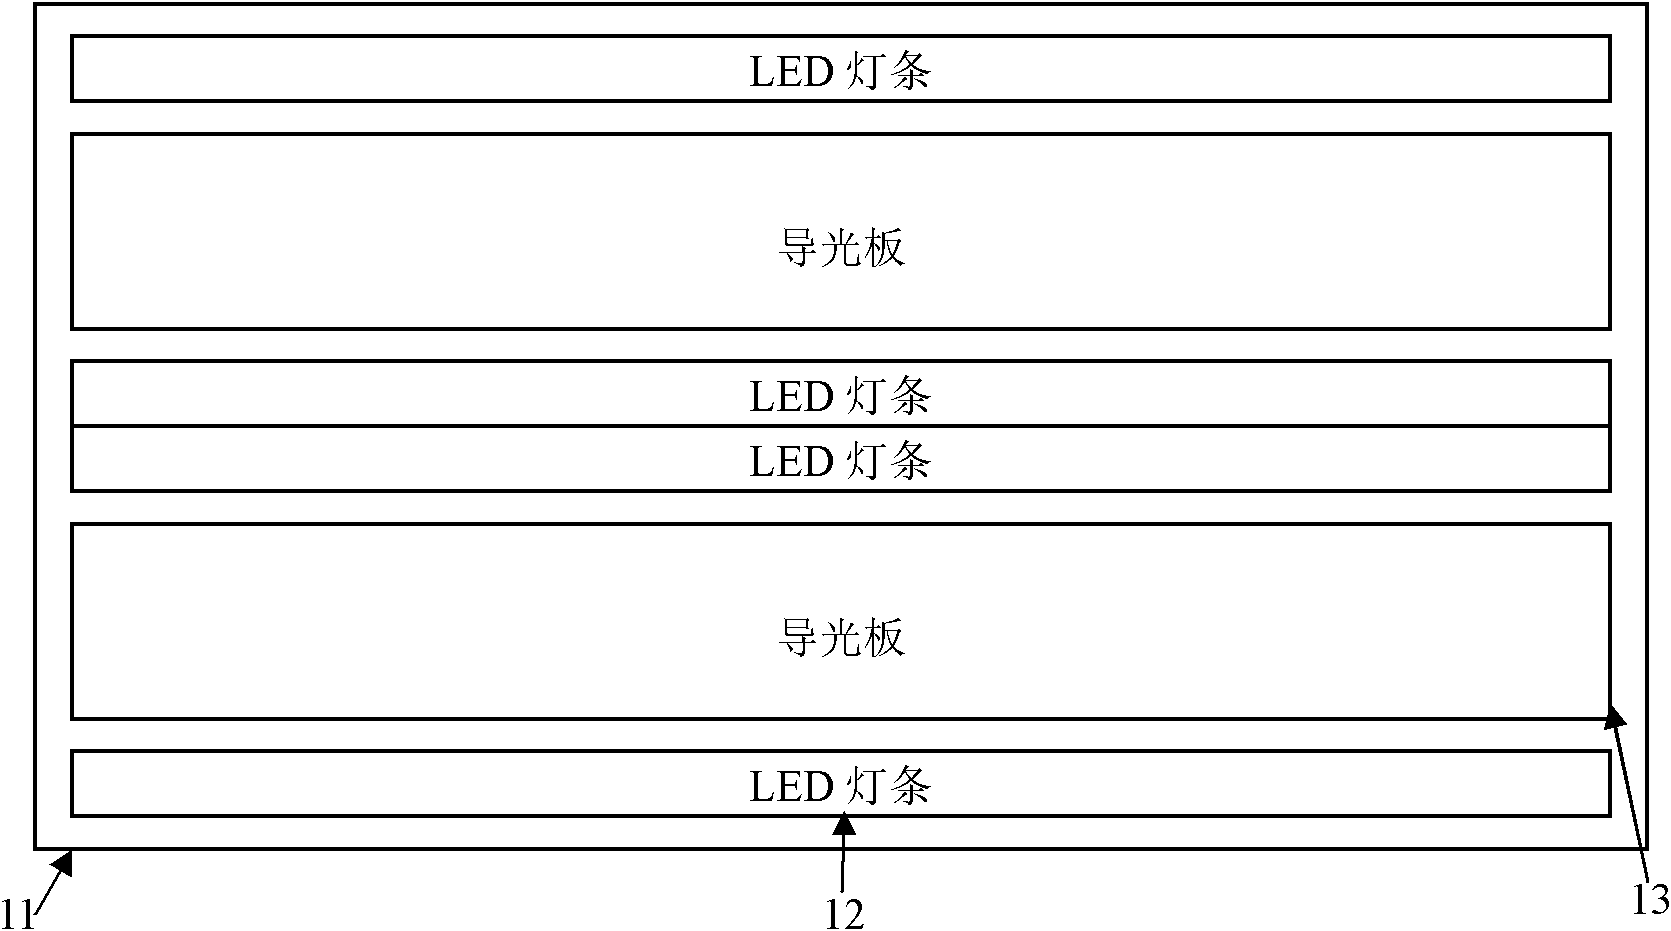 Hybrid LED (light-emitting diode) backlight source drive method